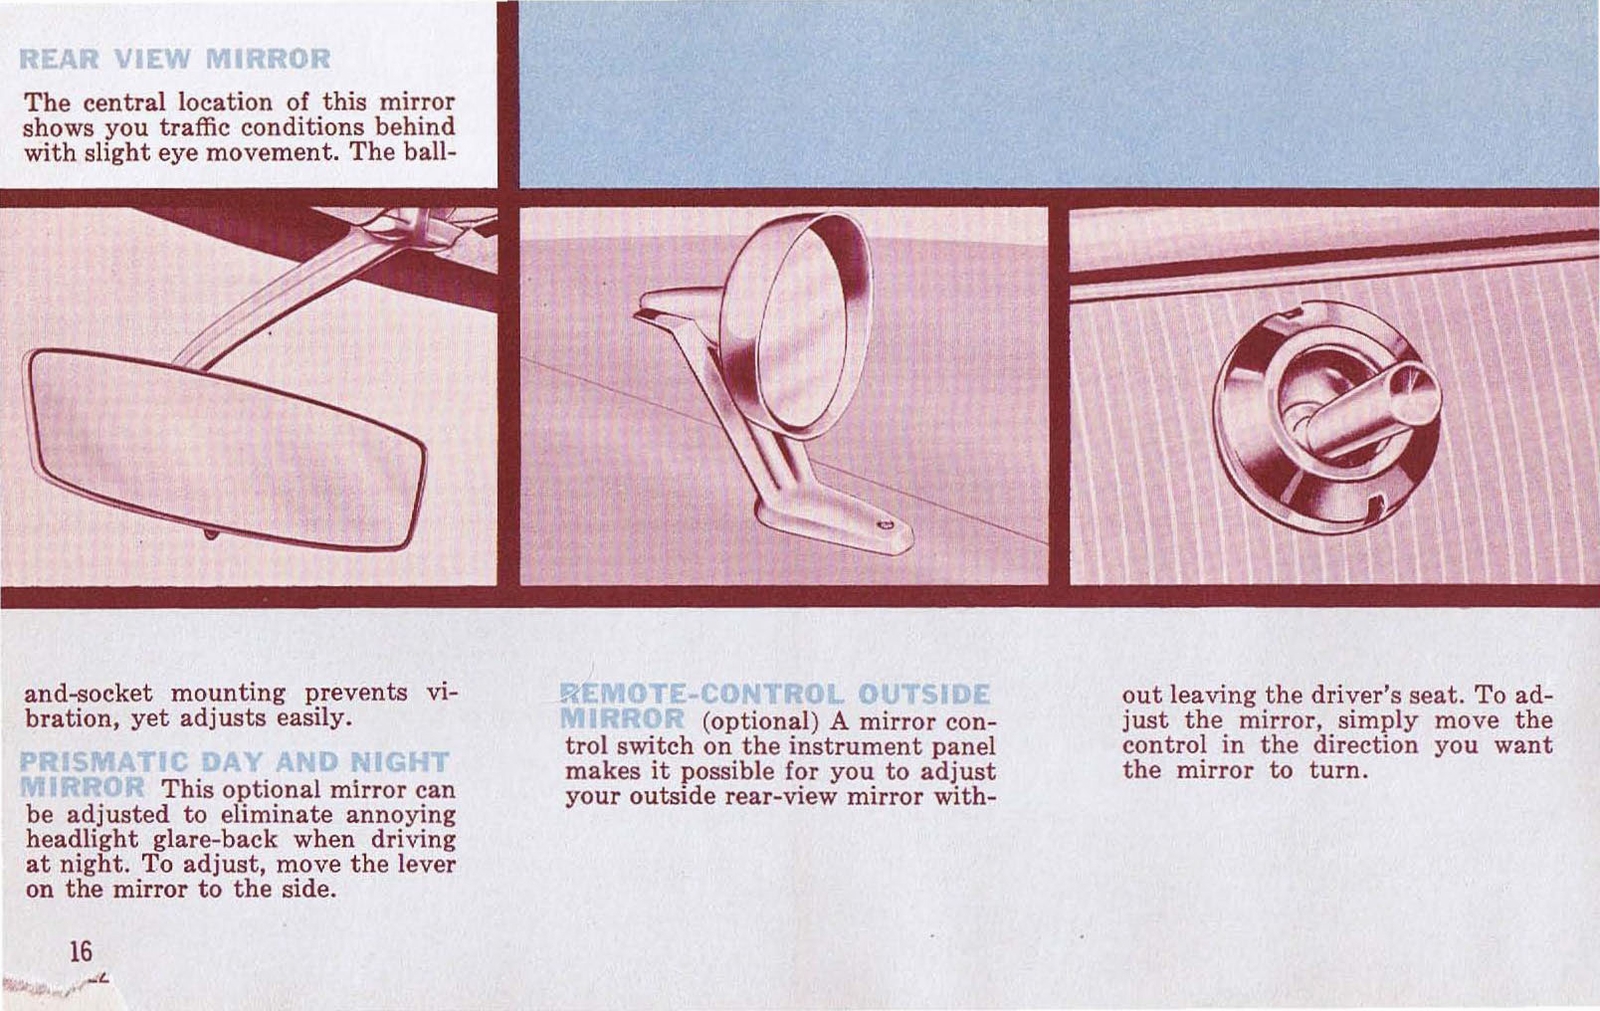 n_1962 Plymouth Owners Manual-16.jpg